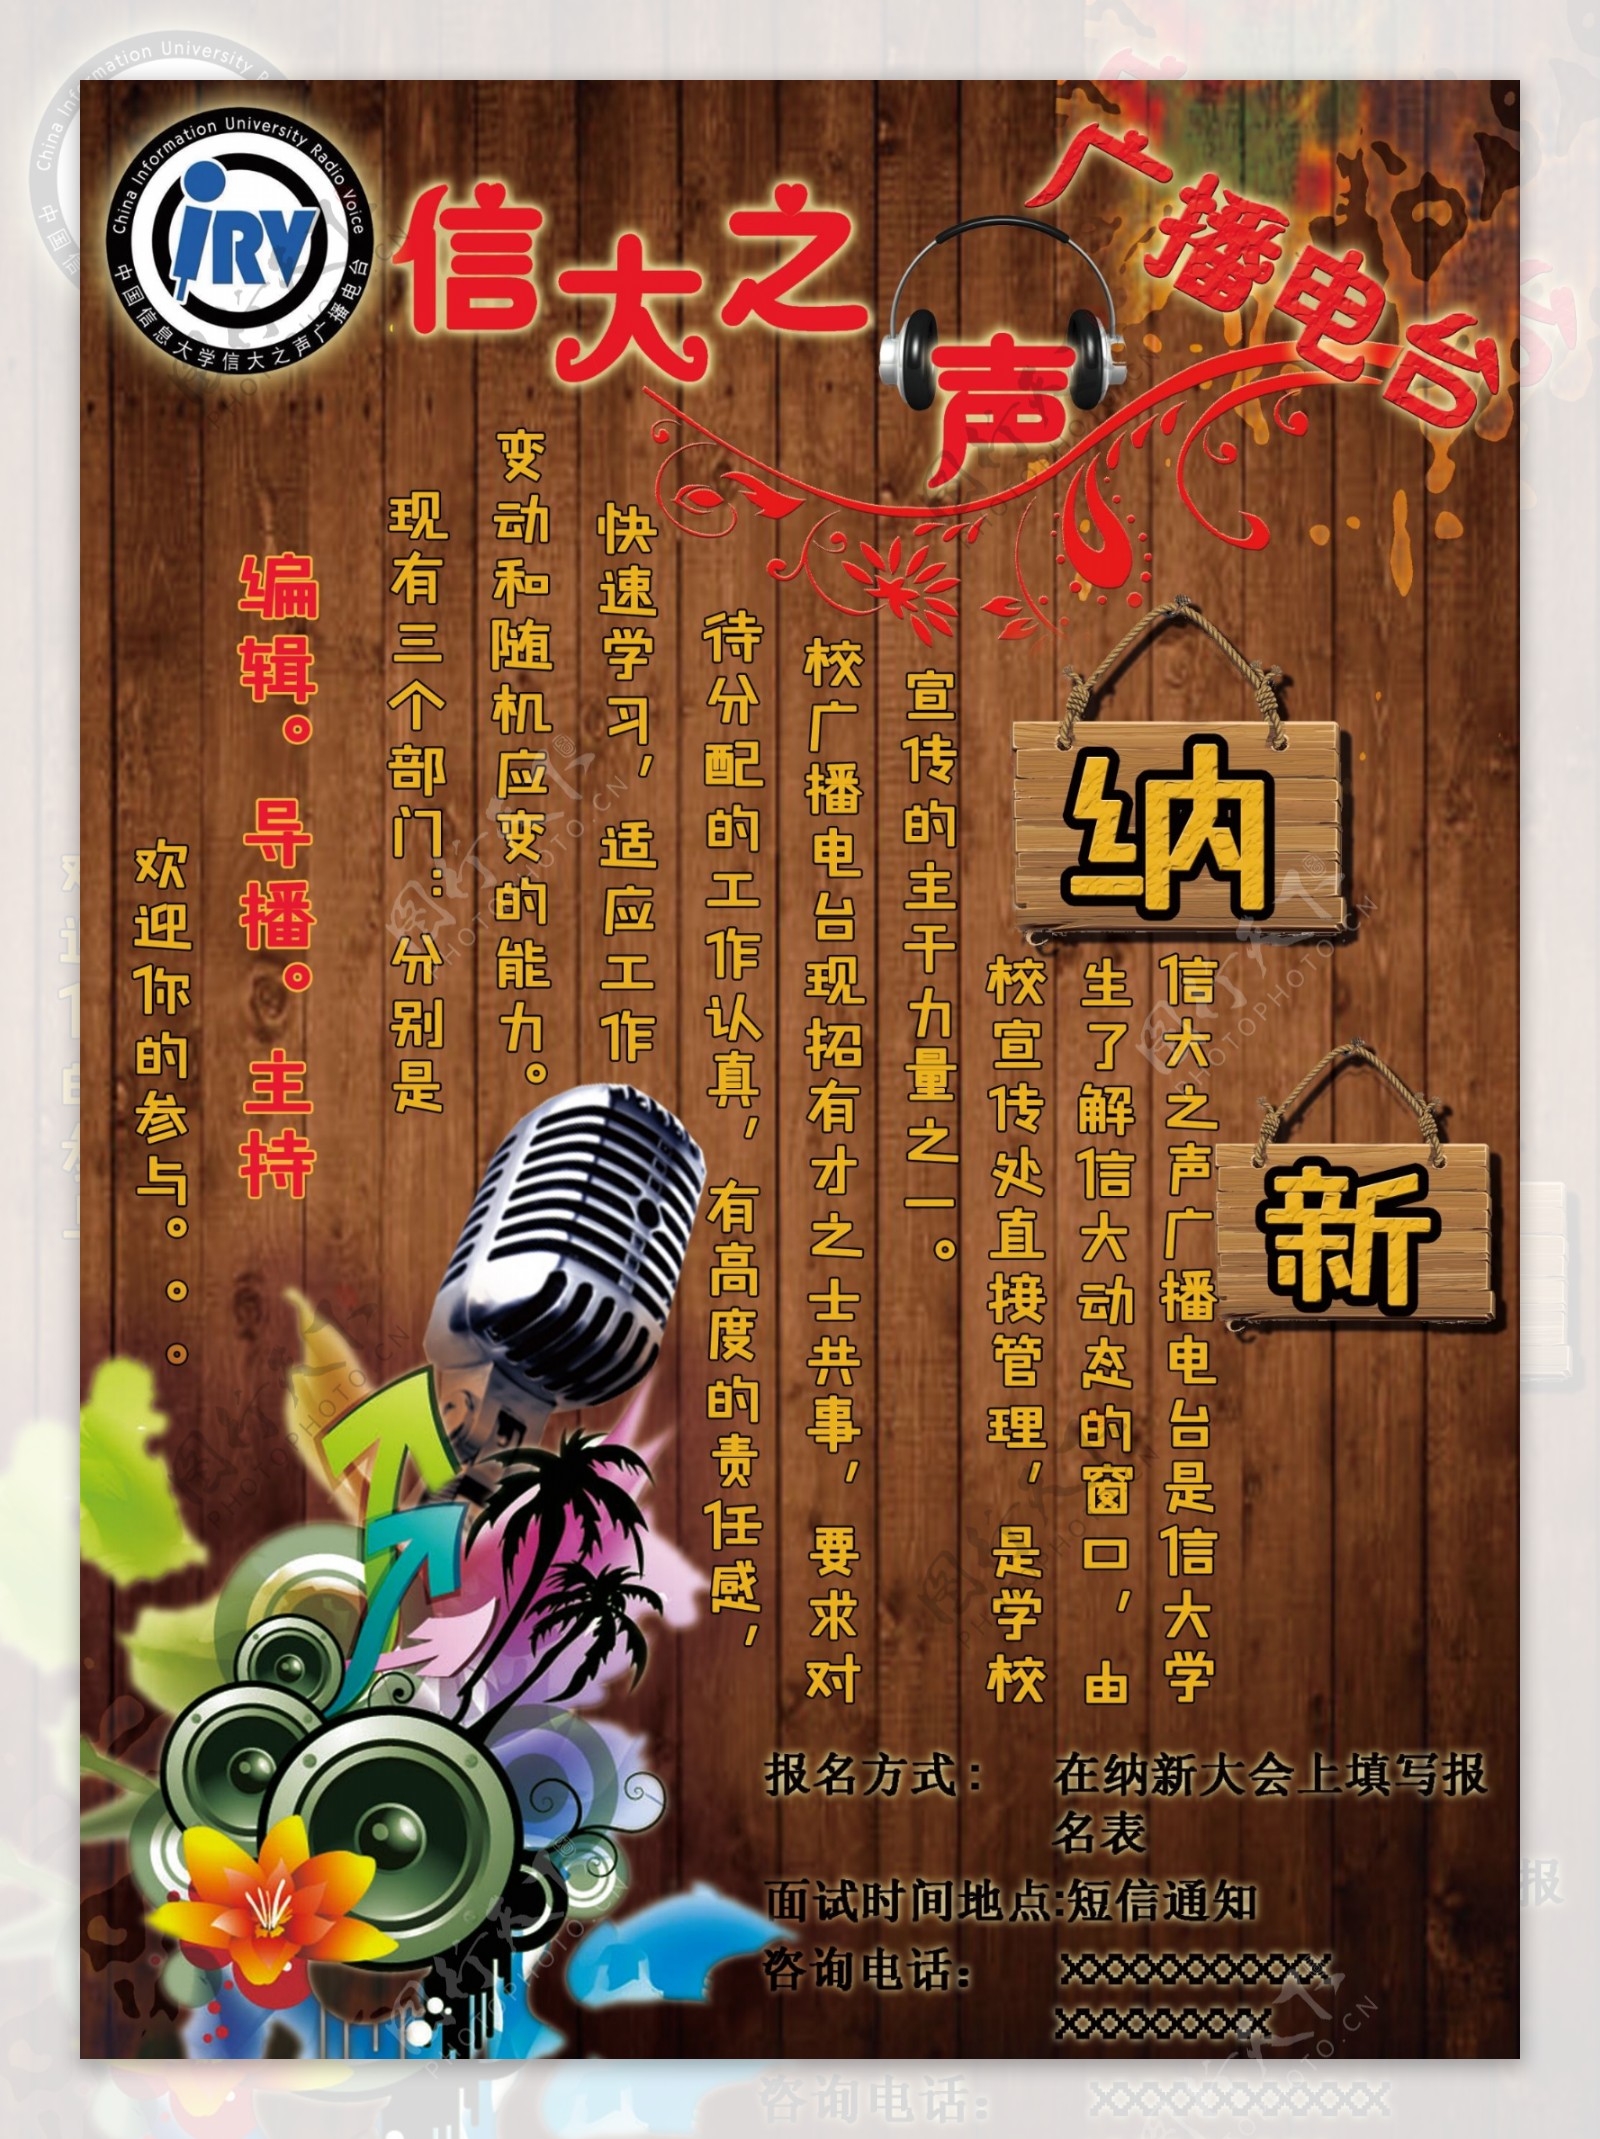 中国信息大学信大之声广播站海报设计SY